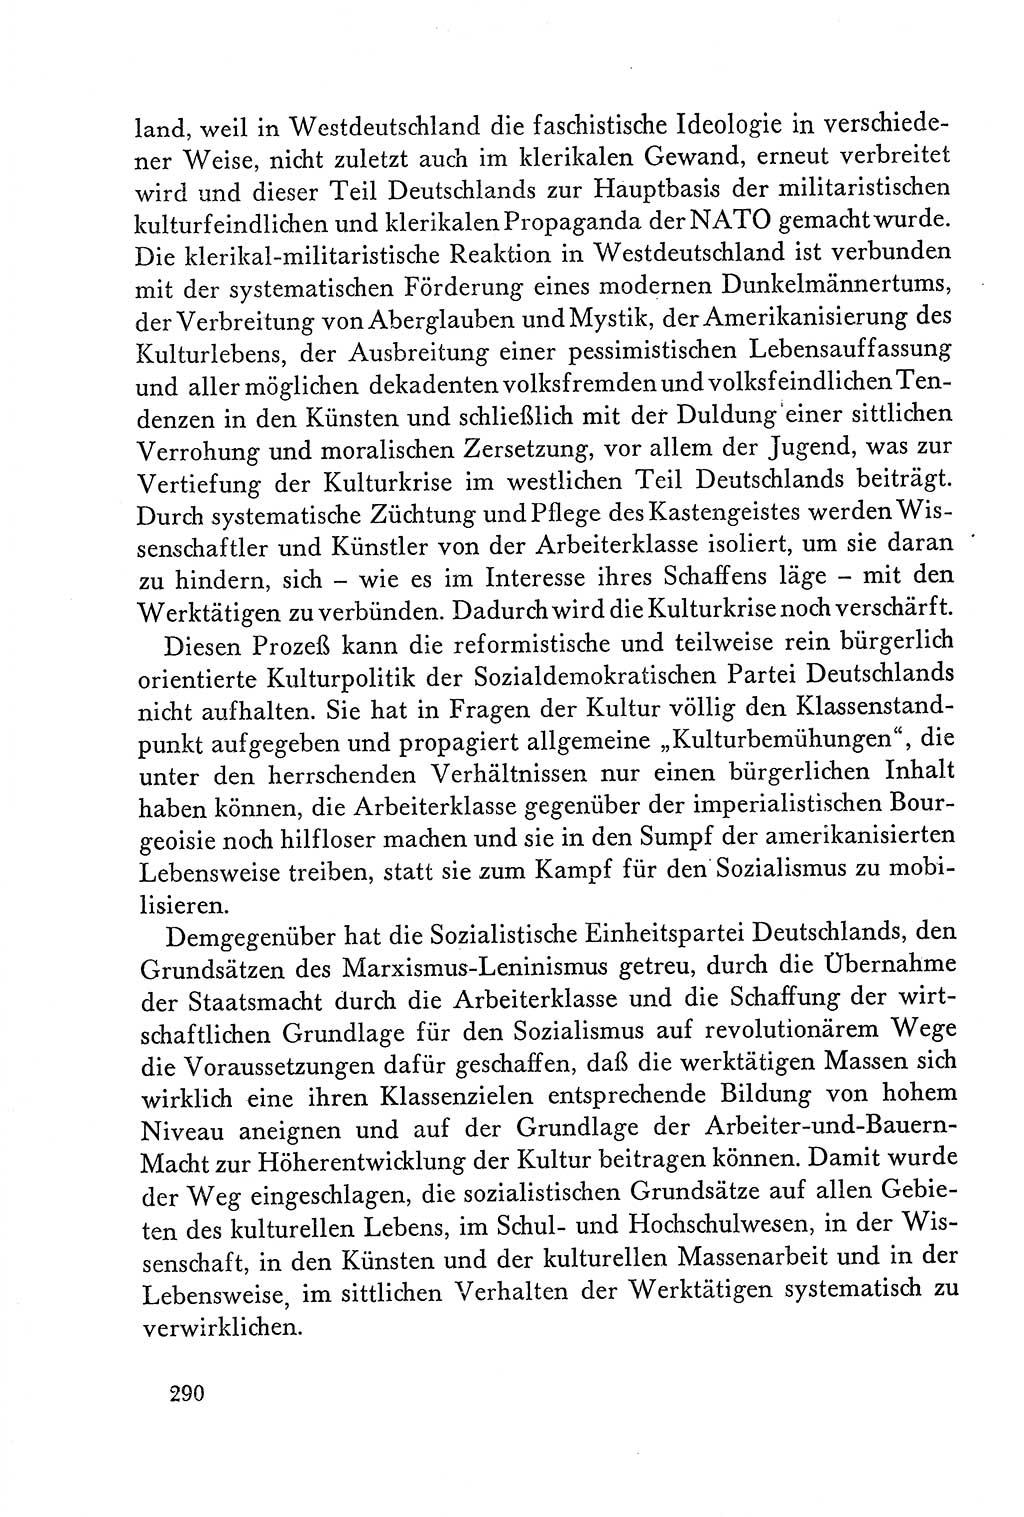 Dokumente der Sozialistischen Einheitspartei Deutschlands (SED) [Deutsche Demokratische Republik (DDR)] 1958-1959, Seite 290 (Dok. SED DDR 1958-1959, S. 290)